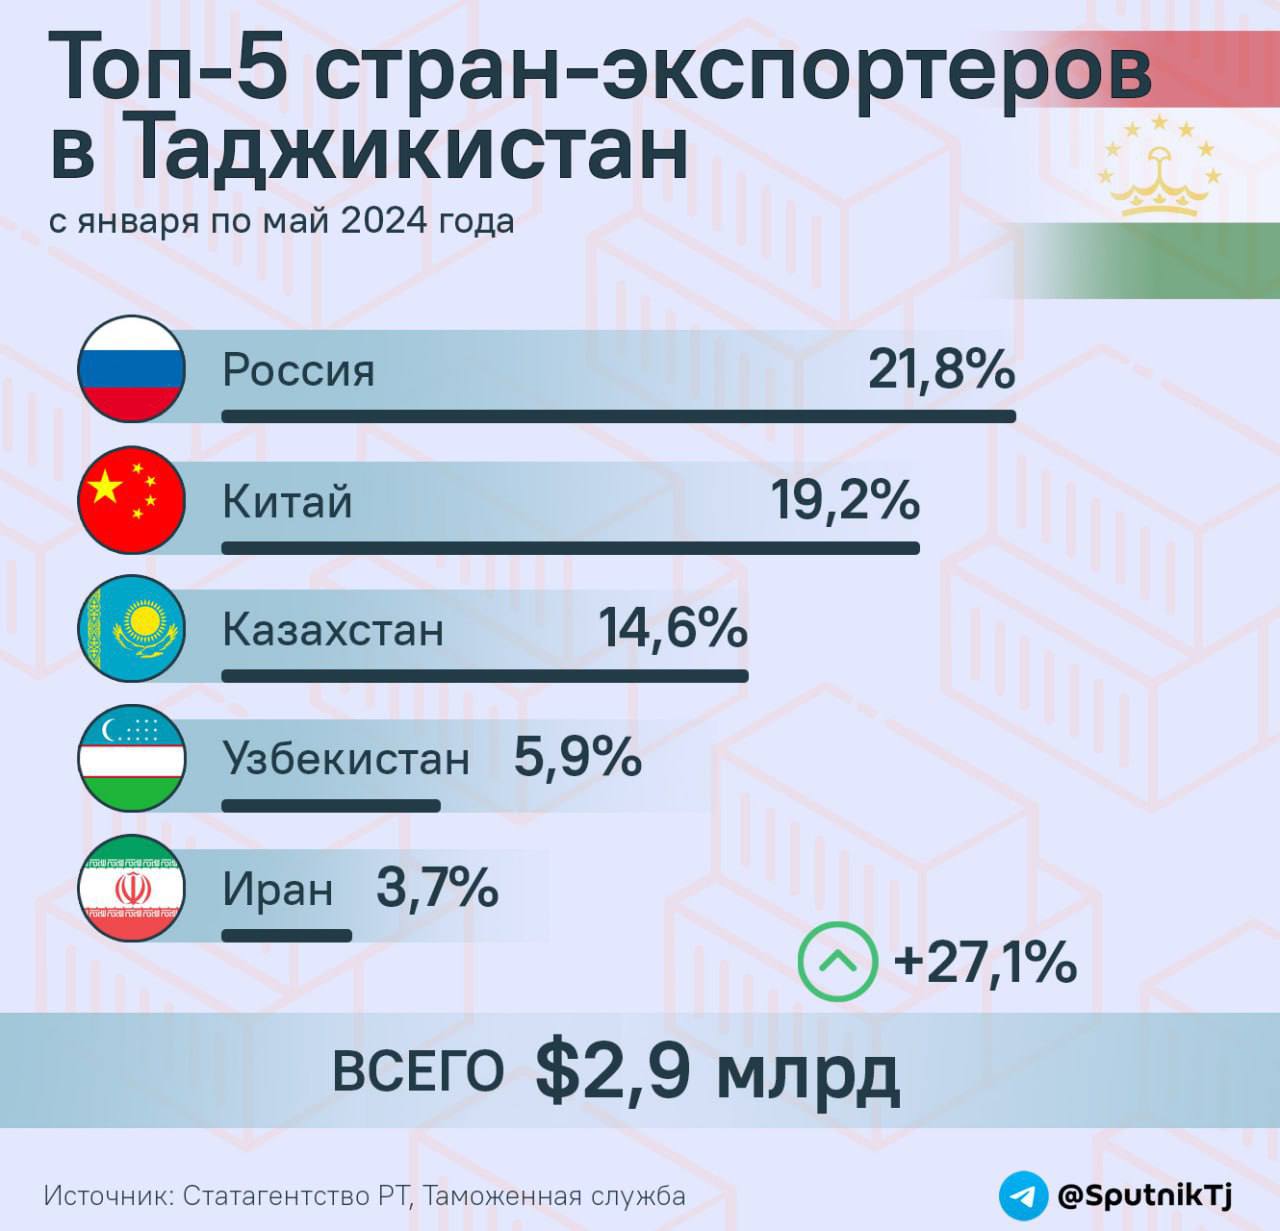 Россия занимает первое место по количеству экспорта в Таджикистан.  А с начала года общий объем импорта в РТ увеличился на 27,1% и составляет уже почти $3 млрд, сообщили   в Агентстве по статистике.  Подробнее - в инфографике  .